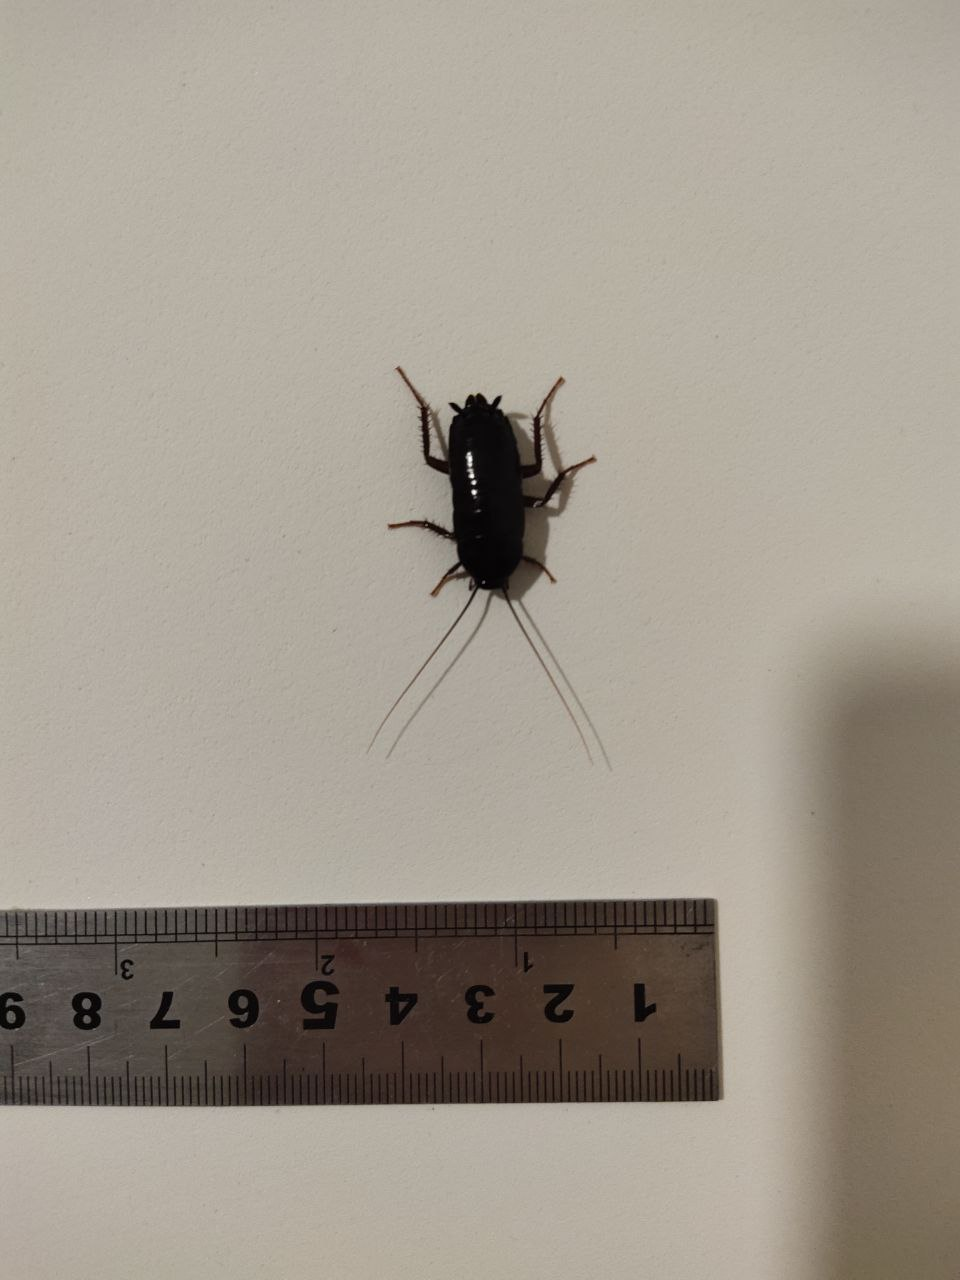 Черный жук похожий на таракана. Чёрный Жук похожий на таракана. Жуки похожие на тараканов. Черный жучок похожий на таракана. Чёрные жуки в квартире похожие на тараканов.